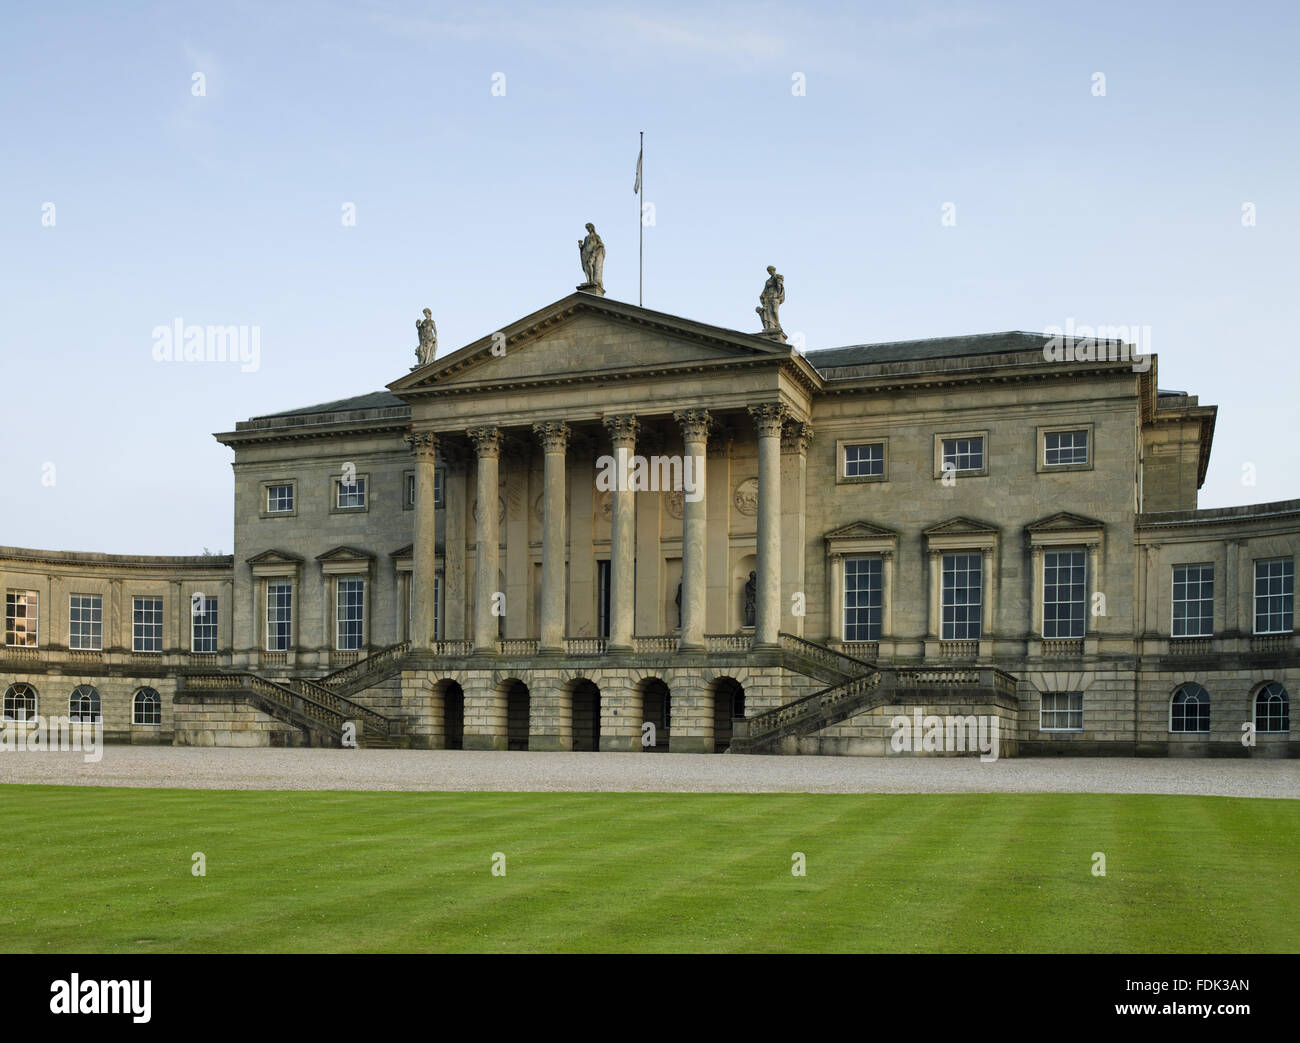 Il nord palladiano anteriore Kedleston Hall, Derbyshire. La casa è stata iniziata in 1759 da Paine e Brettingham, ma con Robert Adam tenendo su disegno del 1760. La parte anteriore del nord ha una massiccia pedimented portico con sculture classiche e ricurva corrido Foto Stock